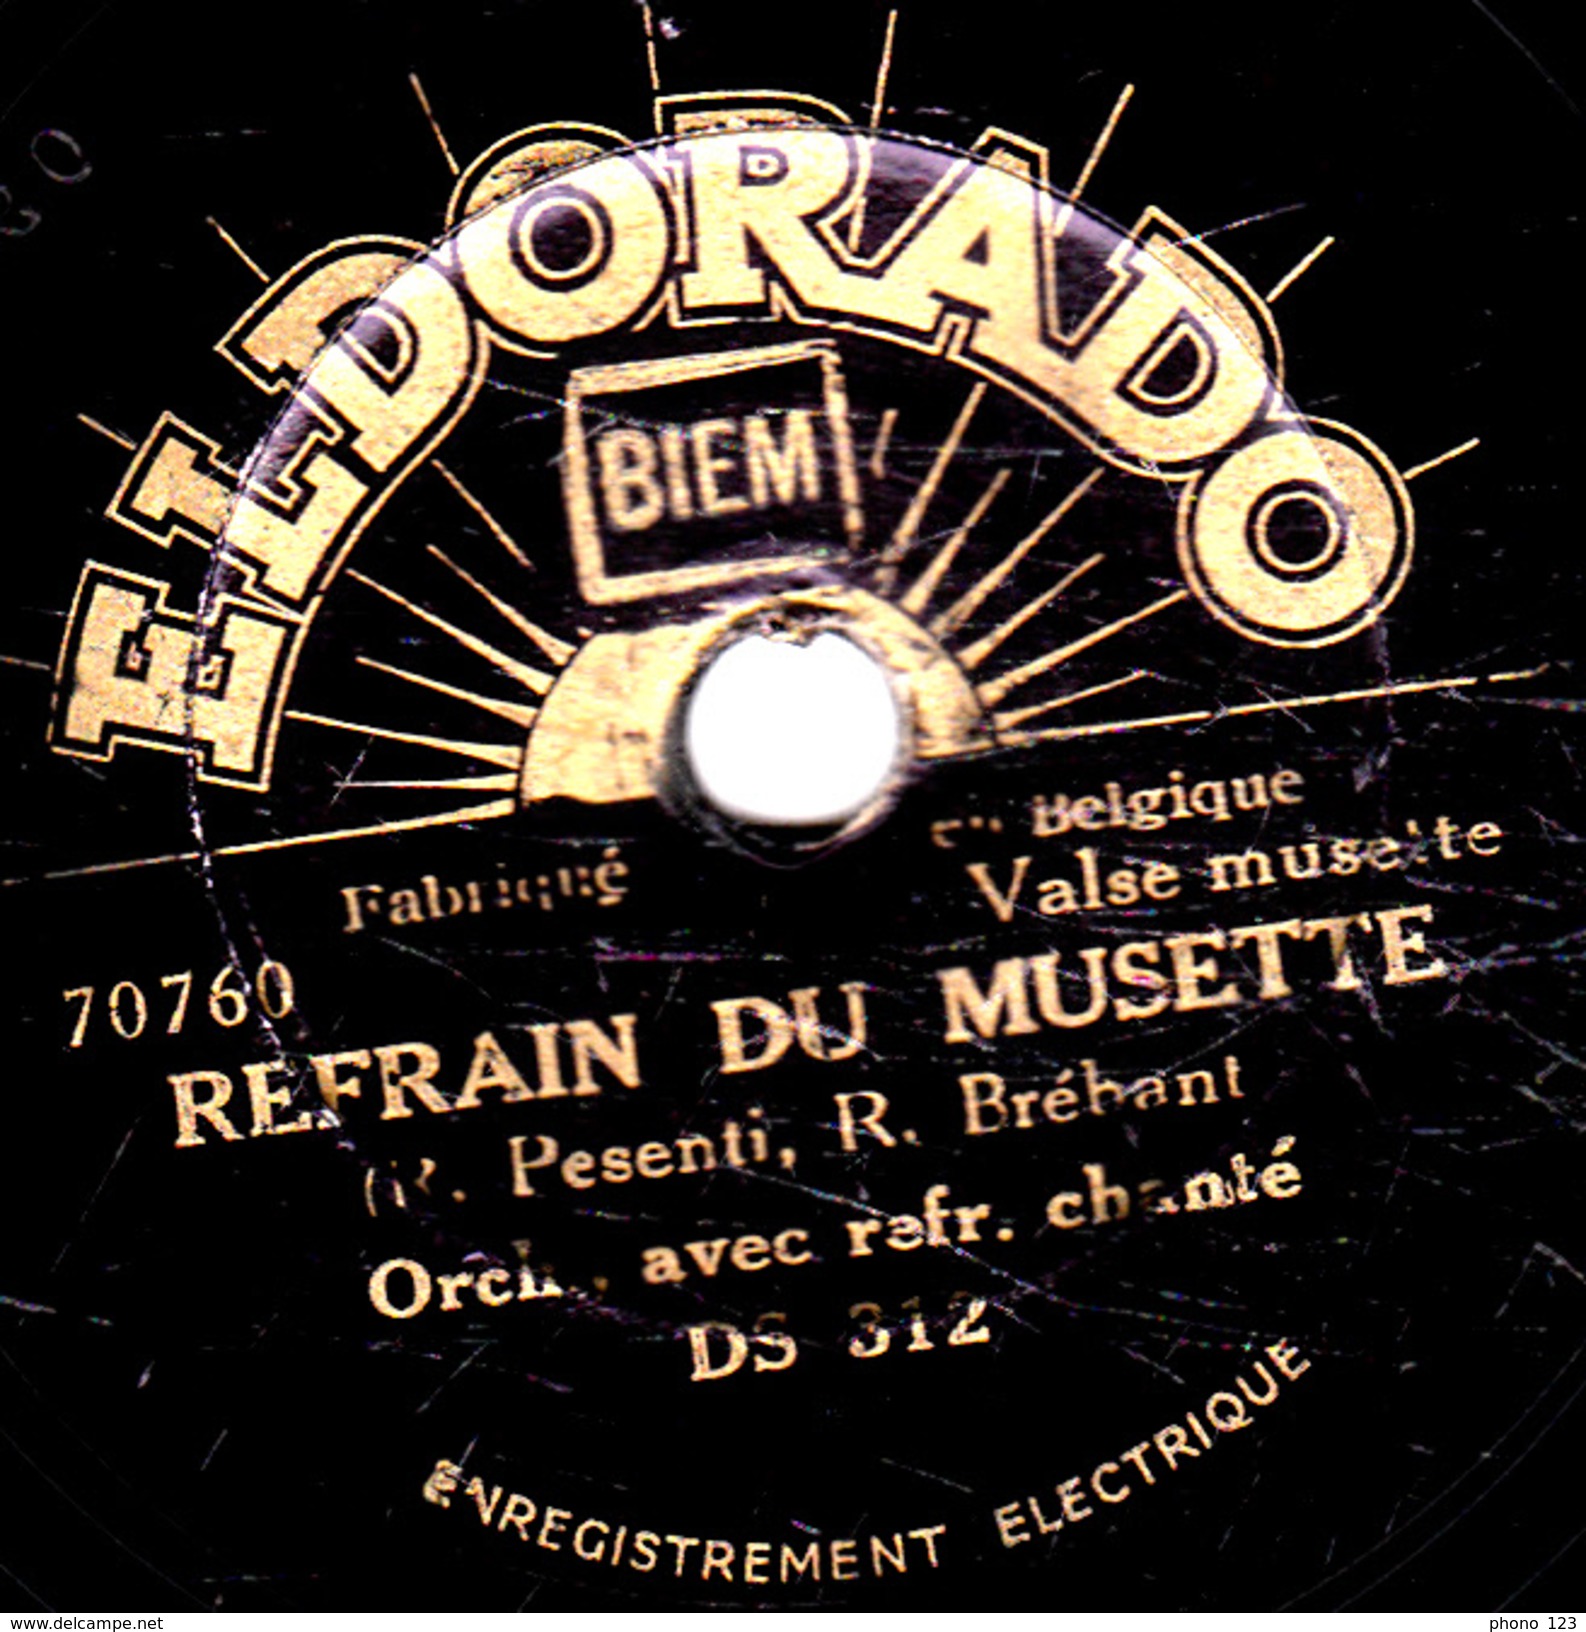 78 T. -  20 Cm - état B -  ORCHESTRE Avec Refrain Chanté - LA VALSE DE L'OMBRE - REFRAIN DE MUSETTE - 78 T - Disques Pour Gramophone